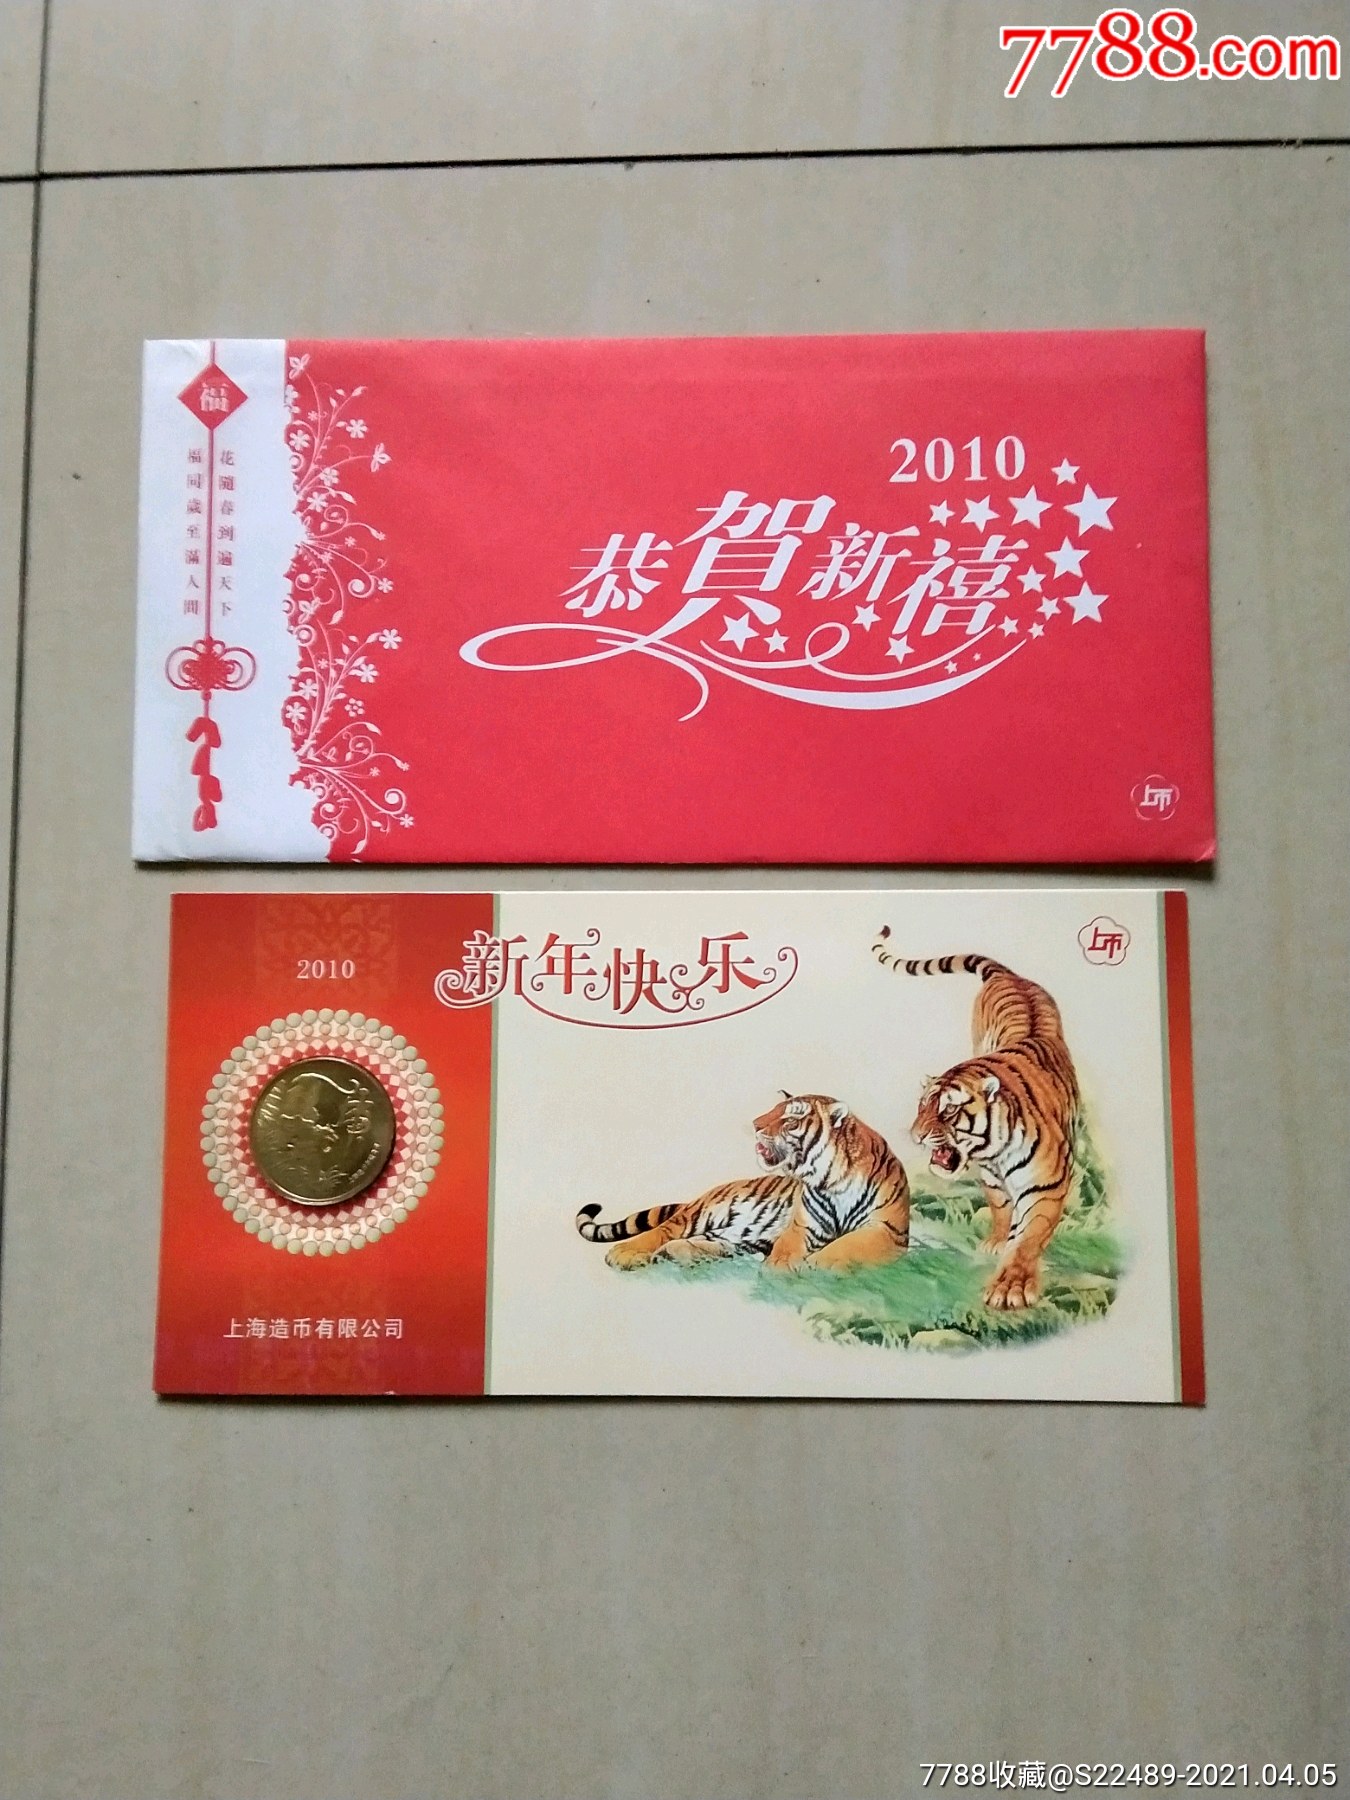 虎年礼品卡2010年